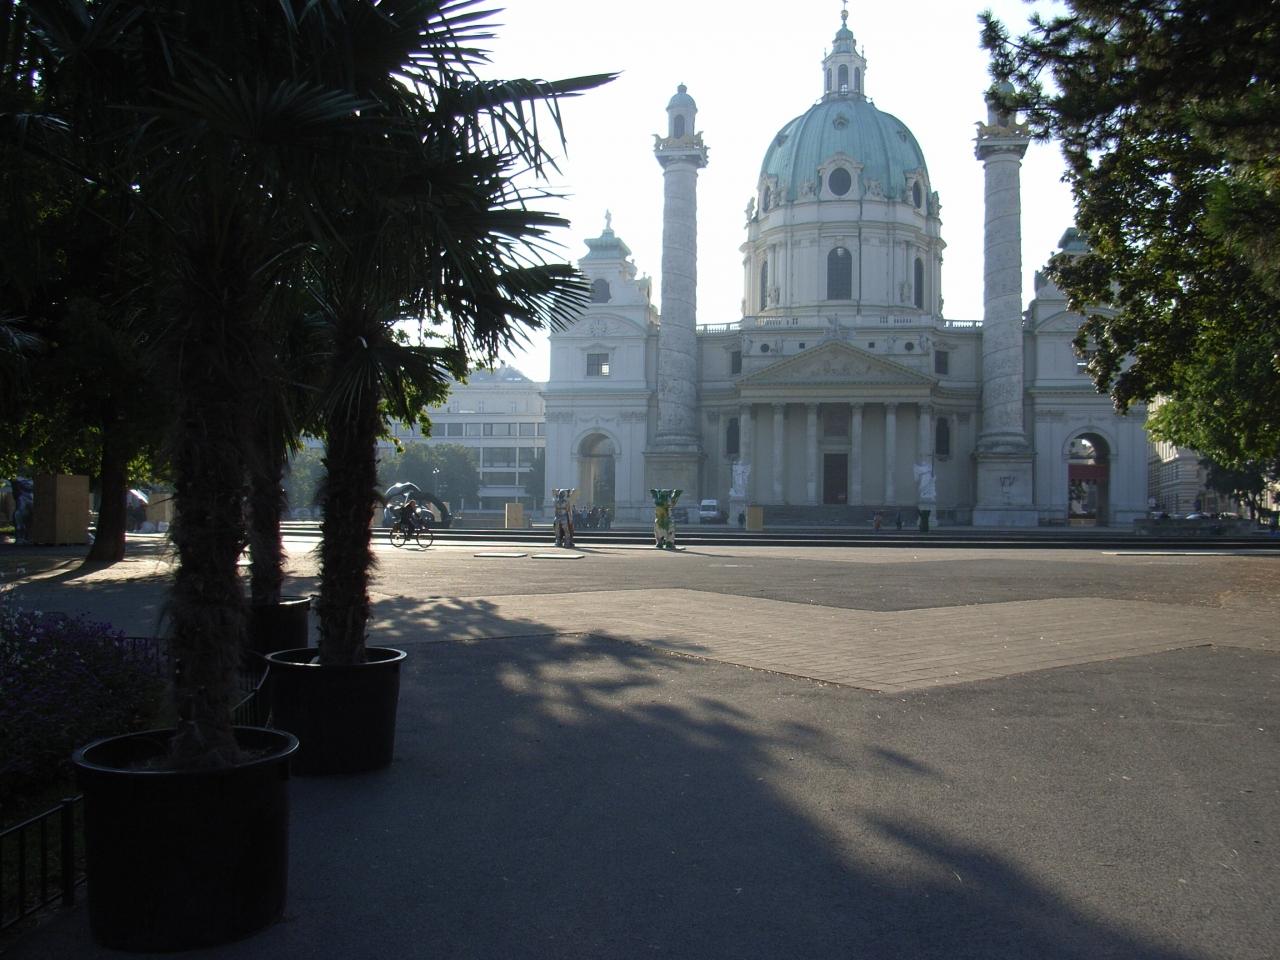 ウィーン街歩き4 4 カールス教会 そして帰国 ウィーン オーストリア の旅行記 ブログ By やまーんさん フォートラベル